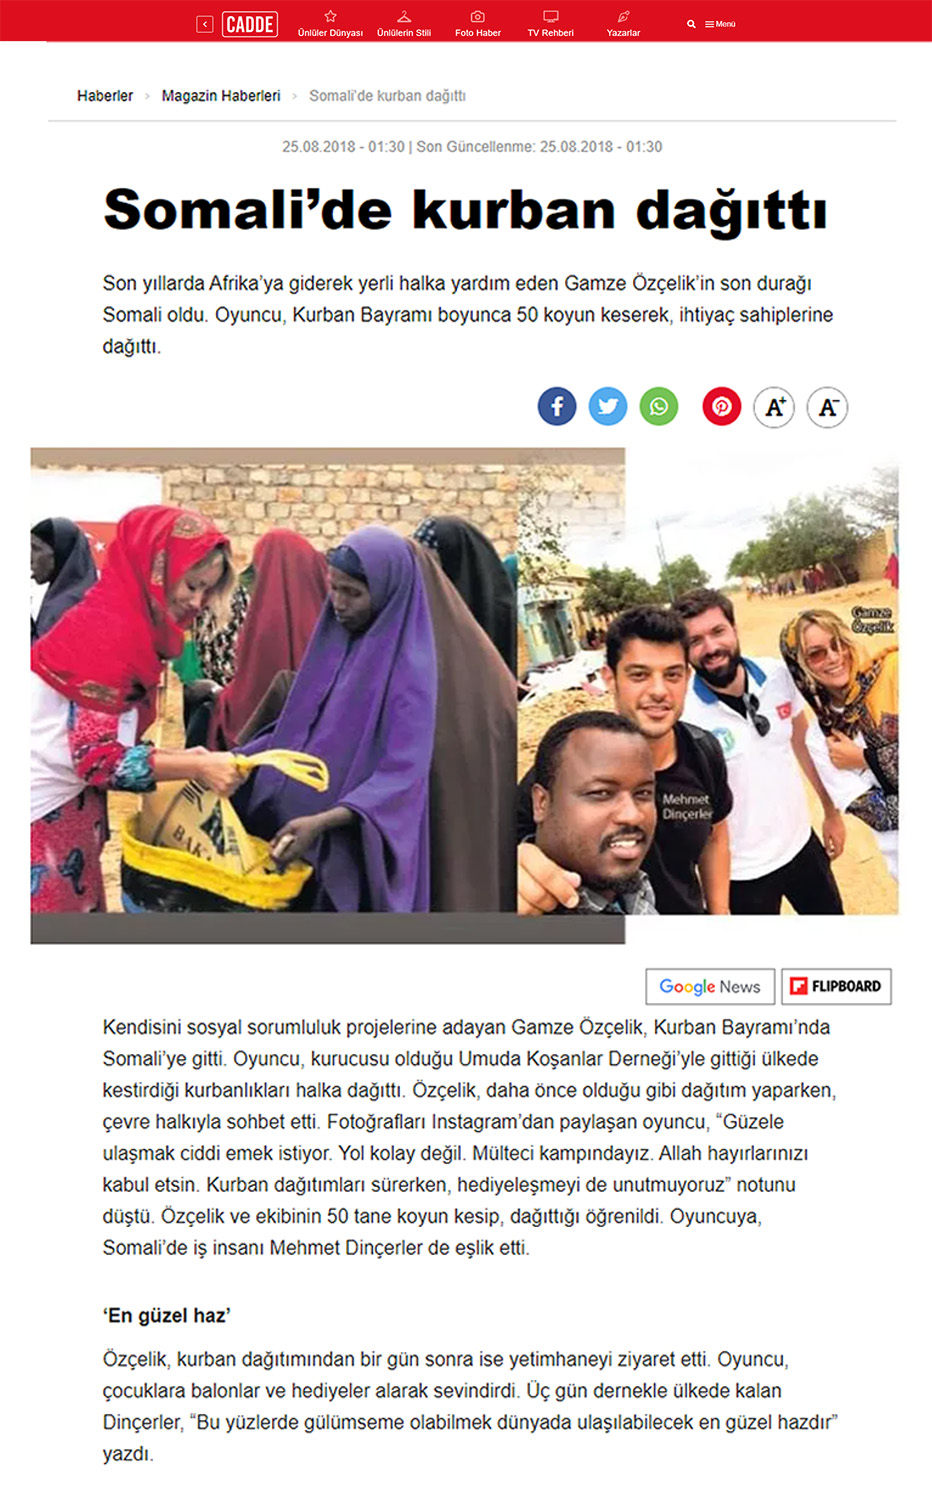 Somali’de kurban dağıttı